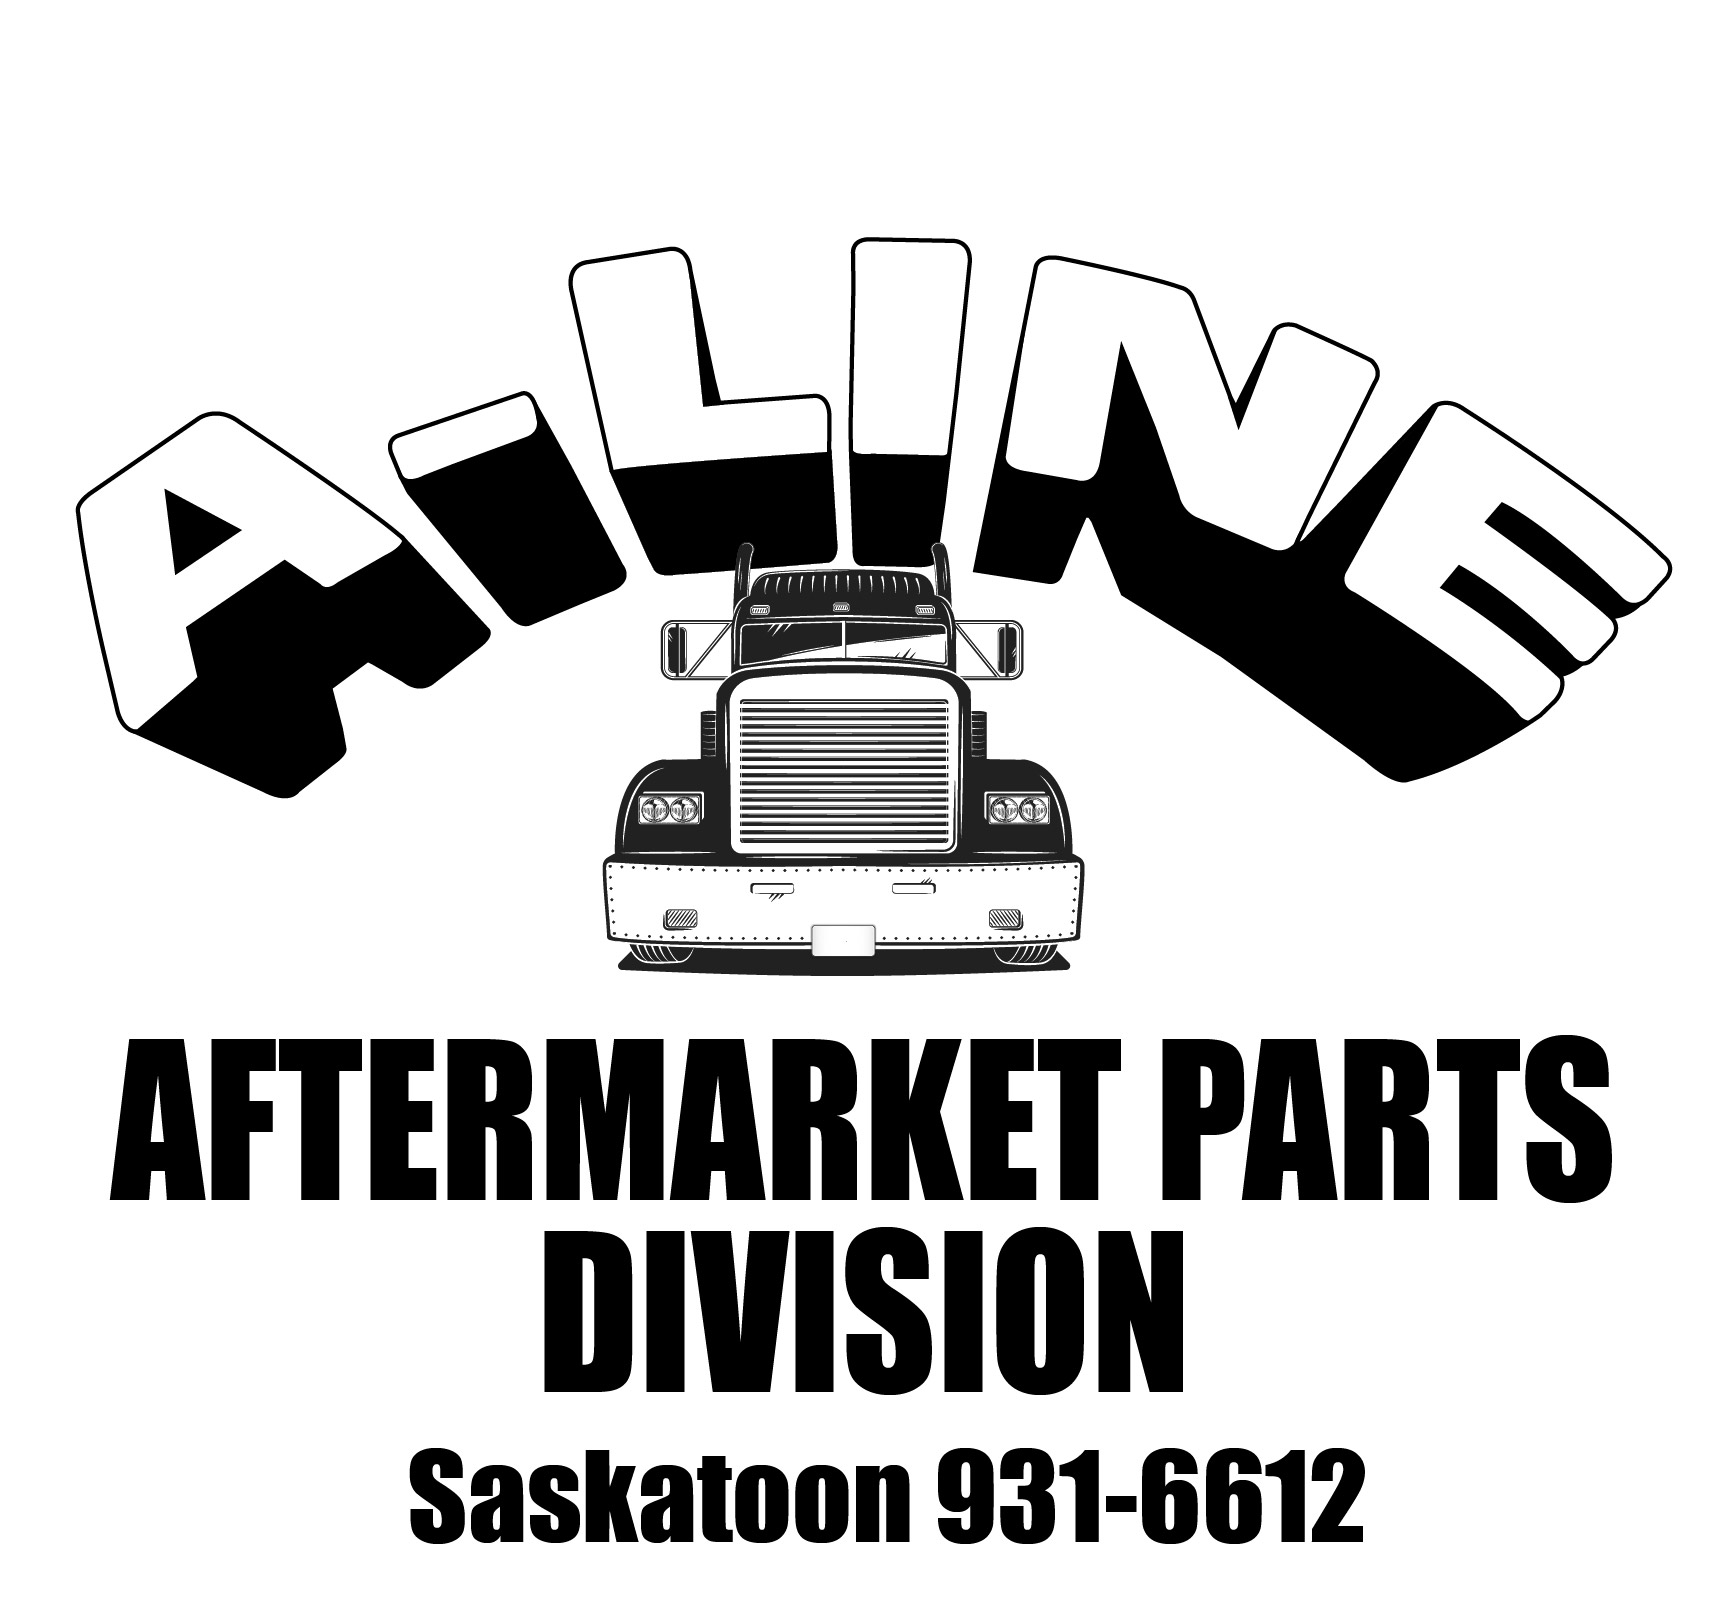 A-line logo